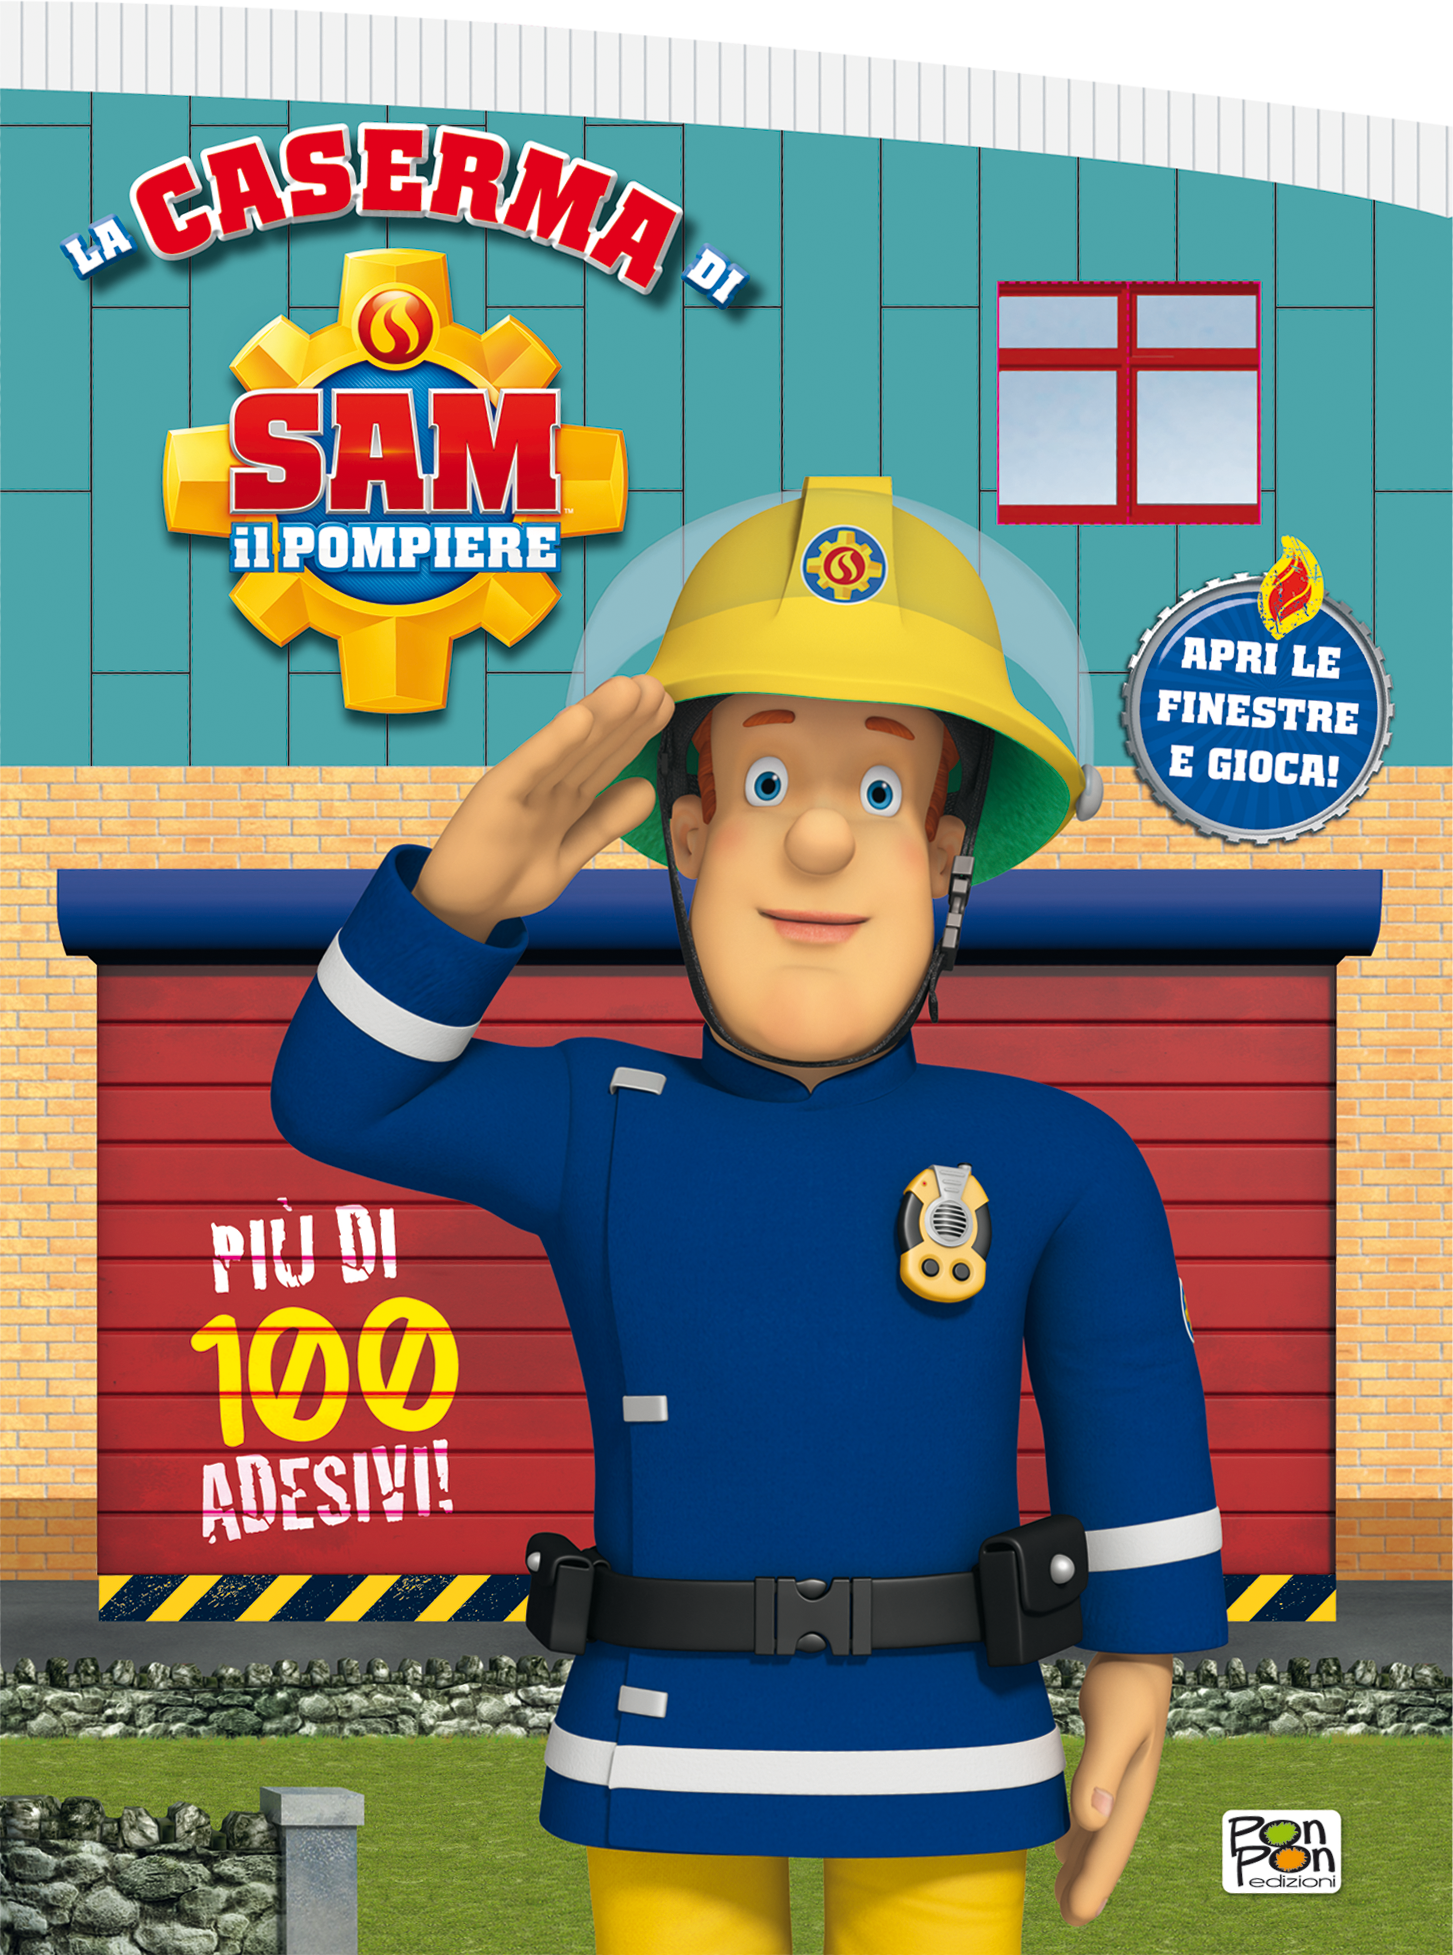 Sam il Pompiere - Fireman Sam BESSIE